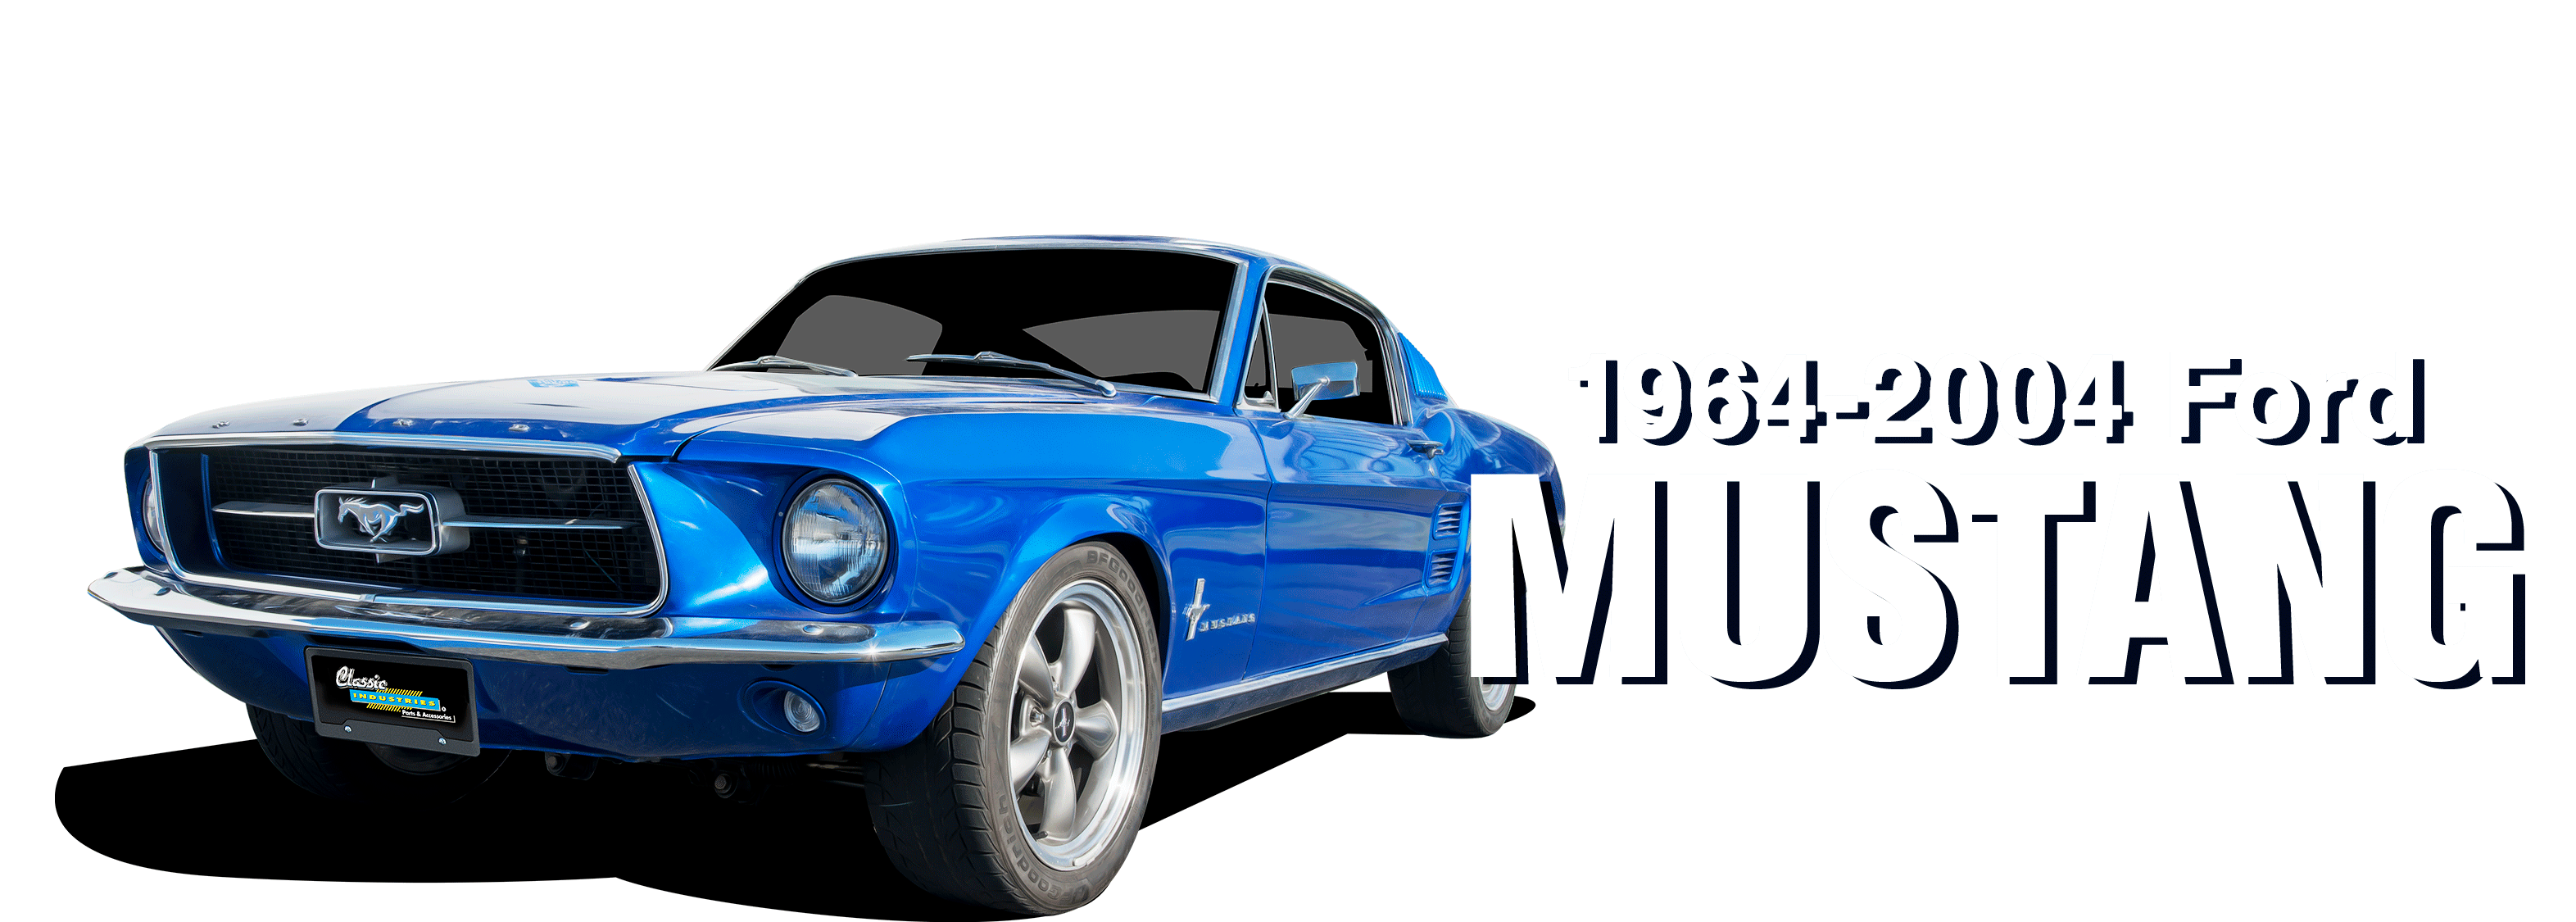 Ford-Mustang-vehicle-desktop_v3